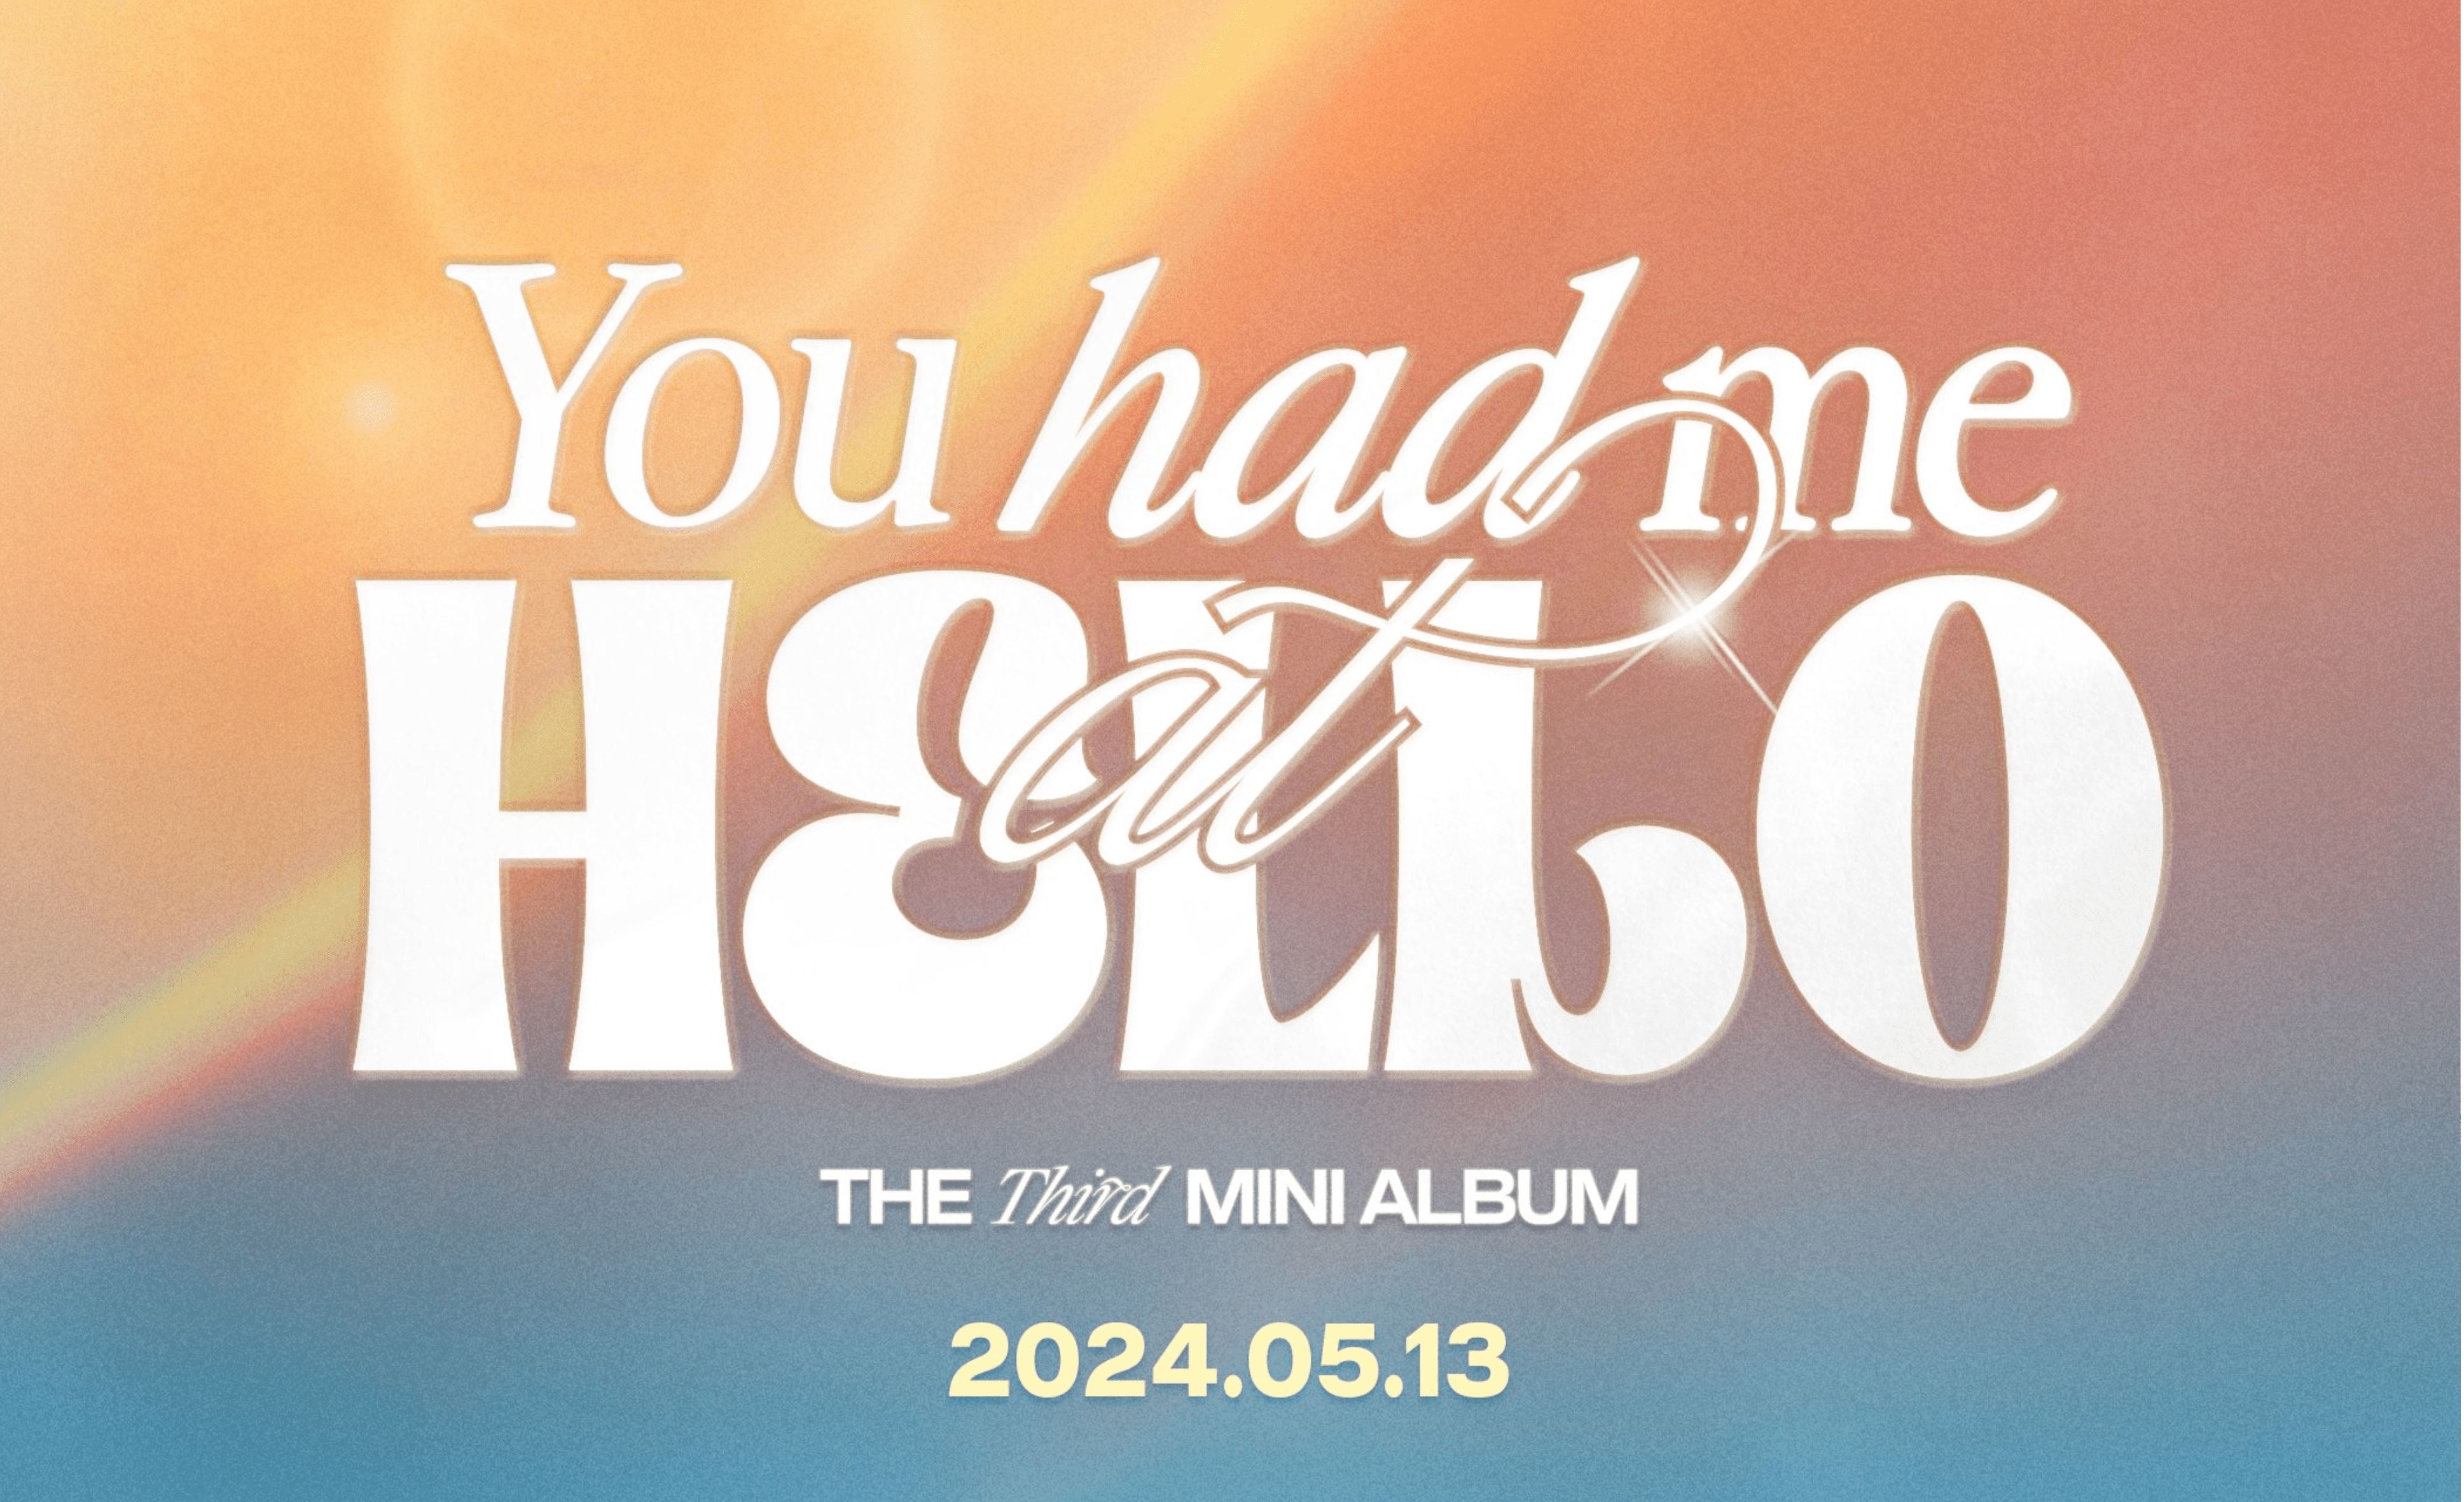 ZB1 enthüllen Details zu ihrem 3. Mini Album! Welche Version holst du dir?